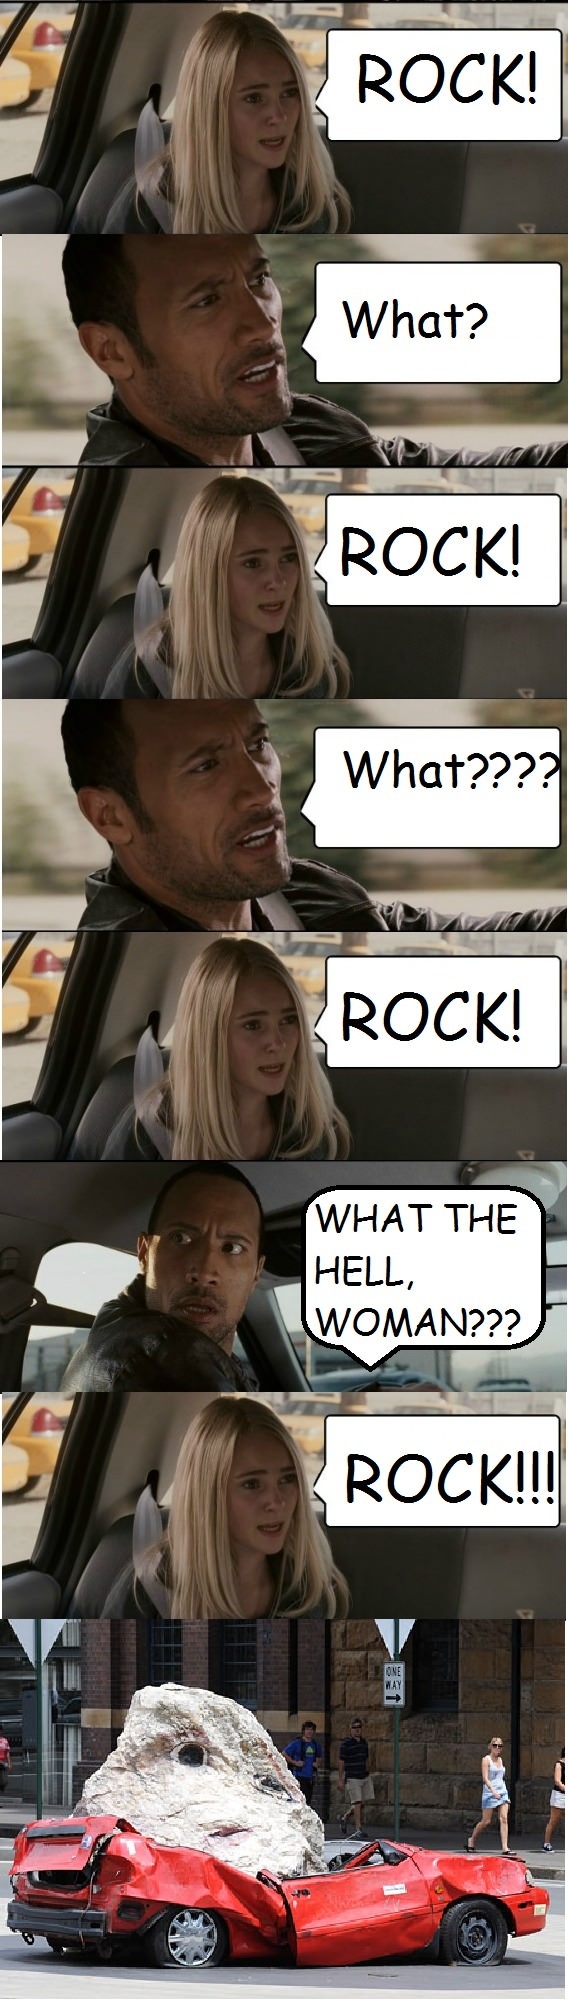 Rock!!! STAHP!!!